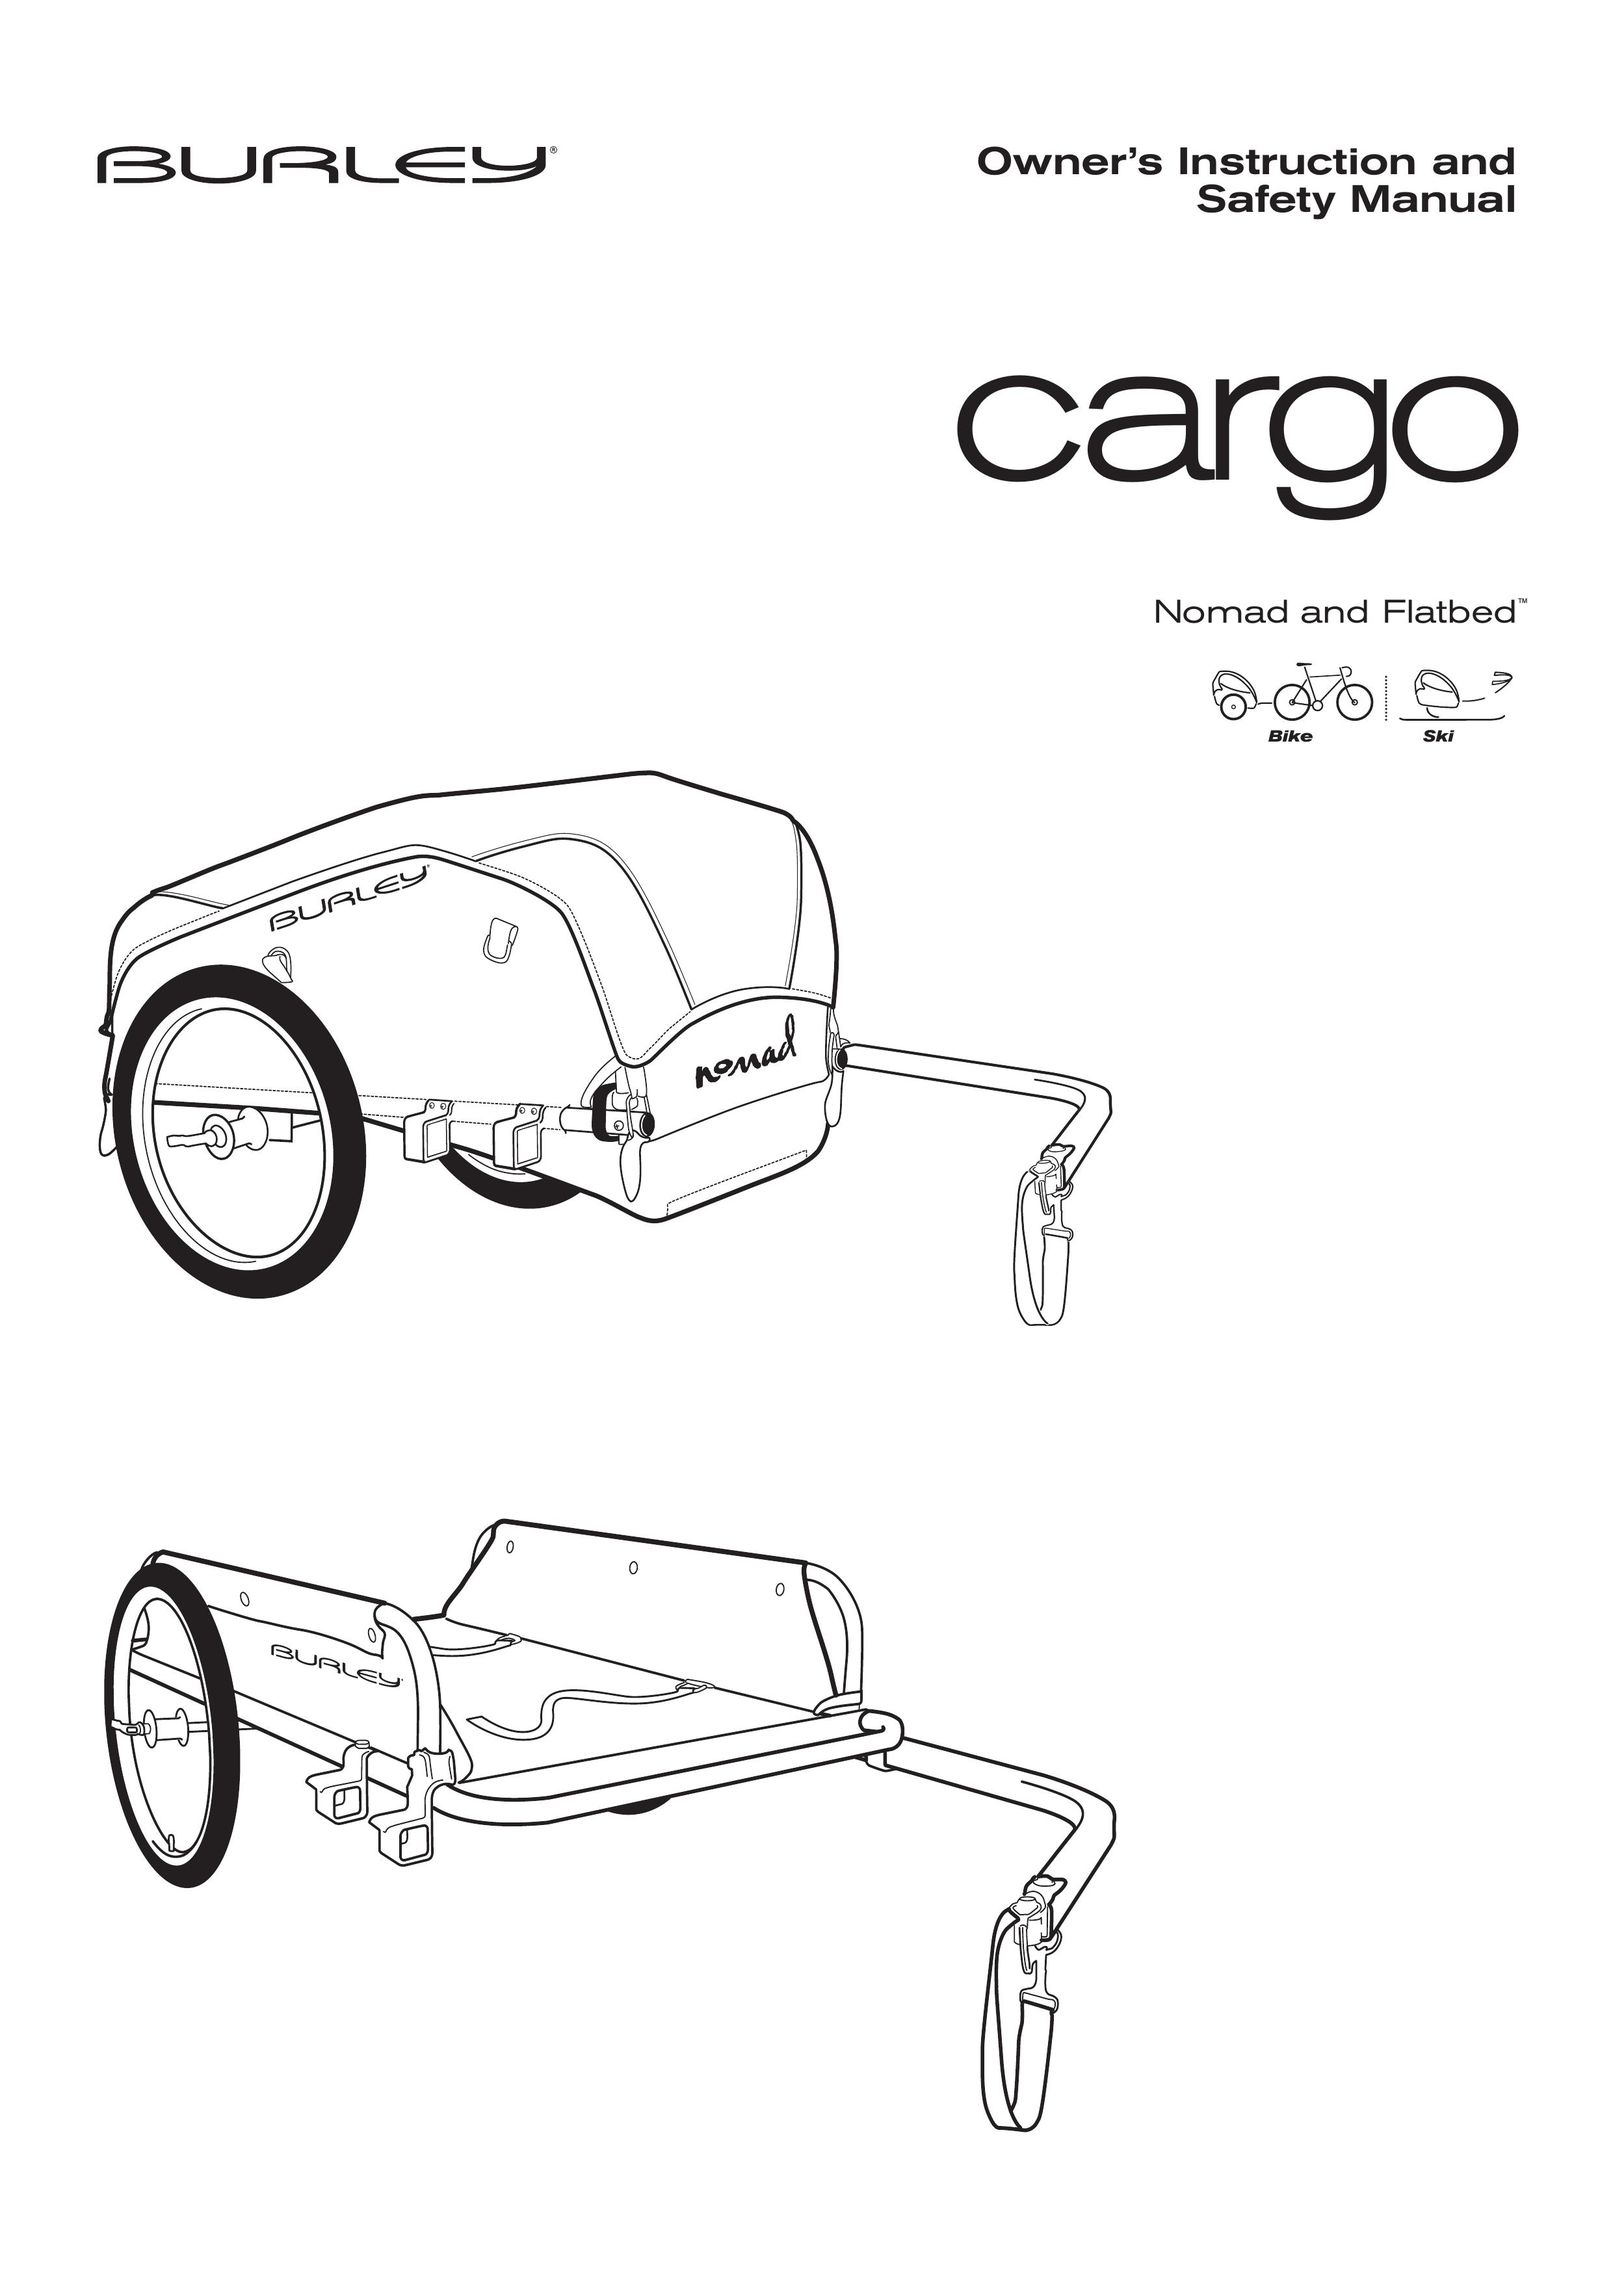 Burley CargoD Stroller User Manual